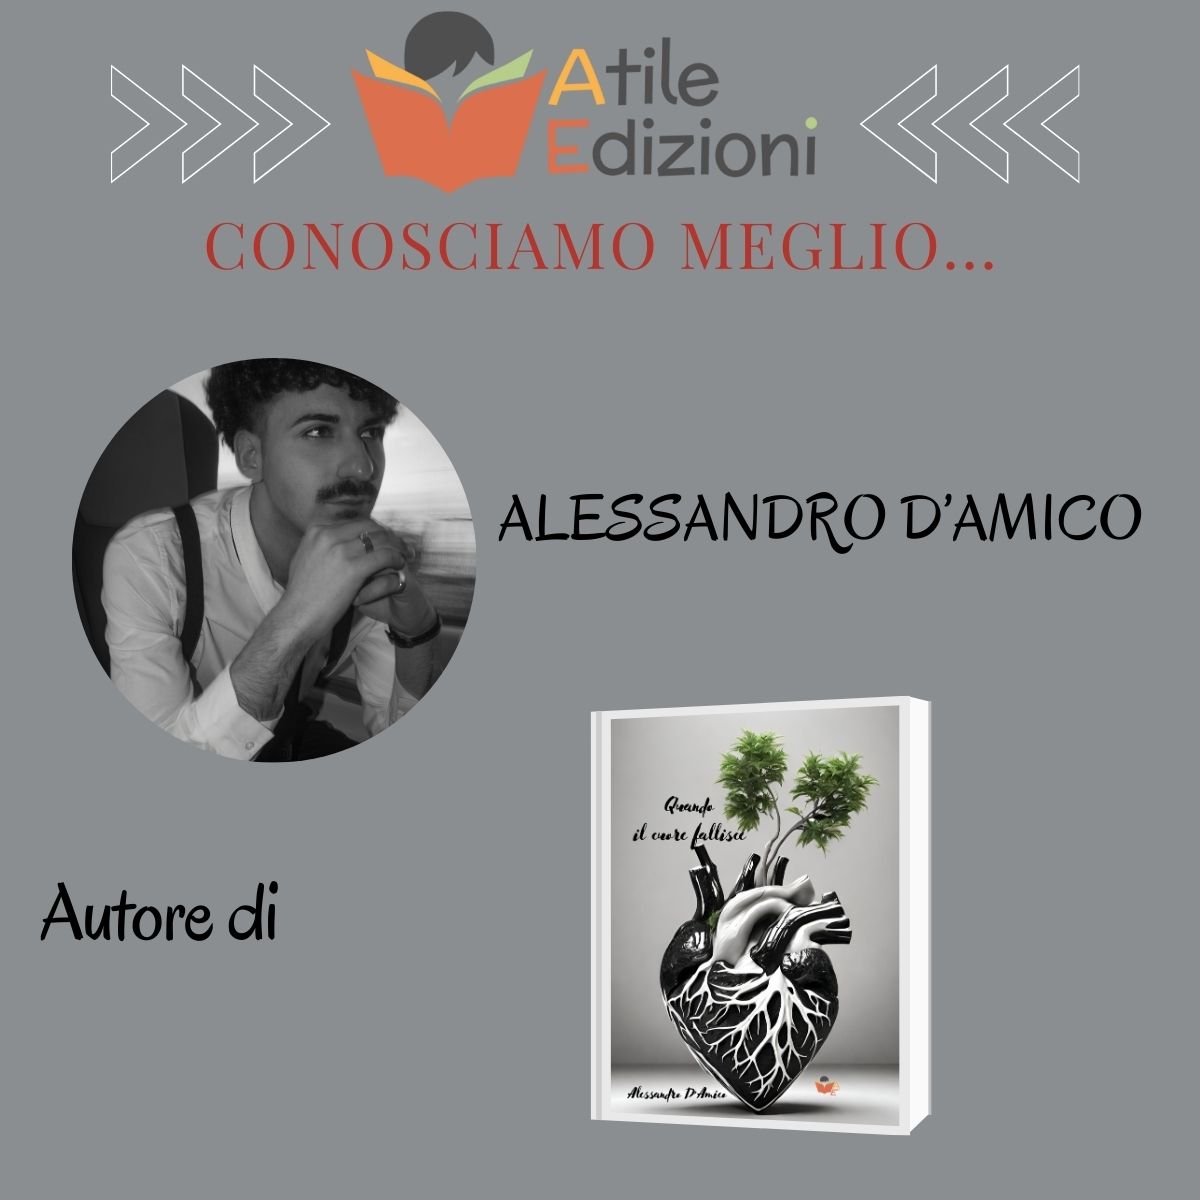 INTERVISTA ALESSANDRO D'AMICO